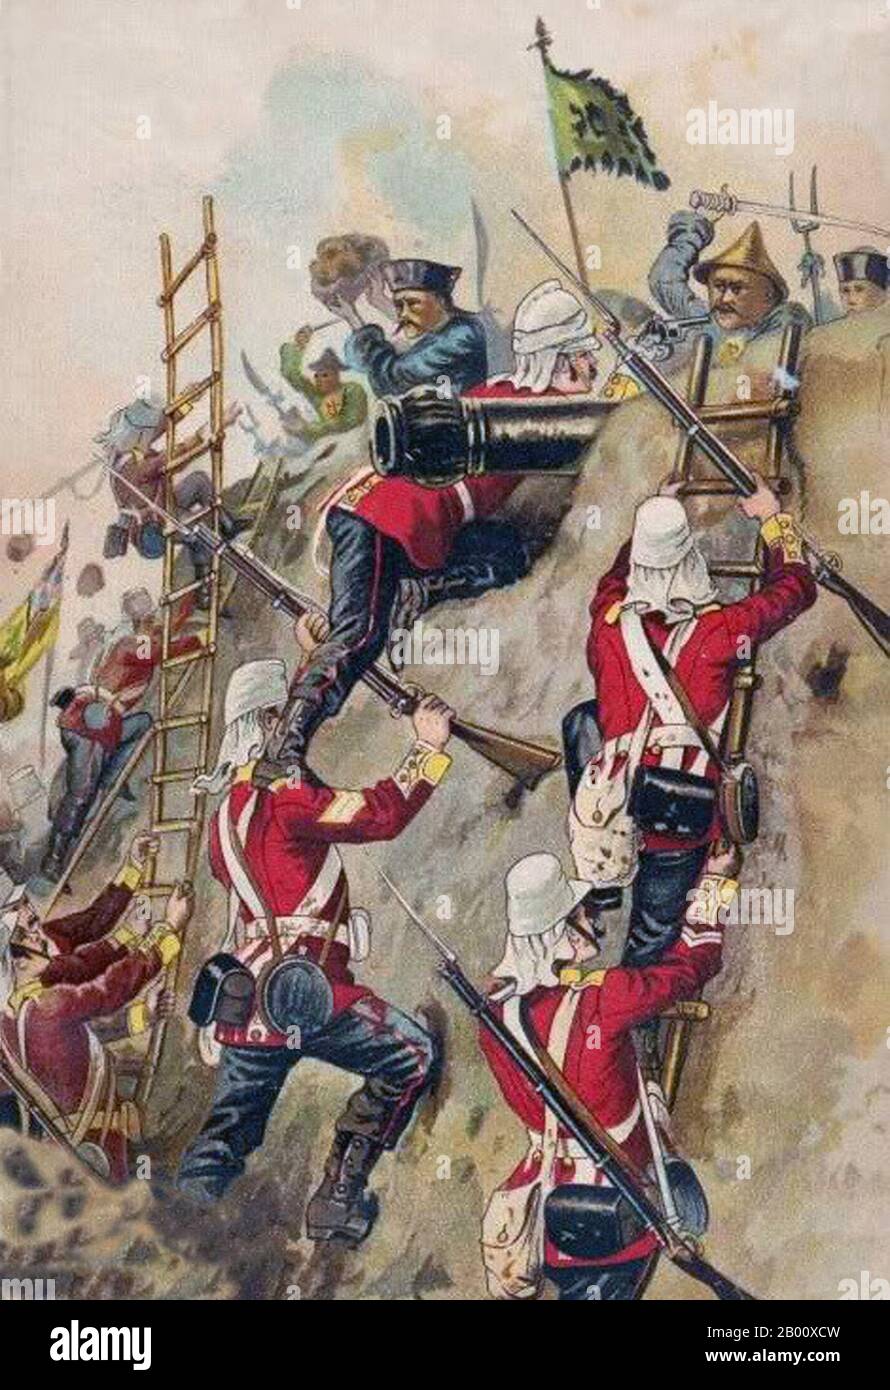 China/Großbritannien: Der zweite Opiumkrieg - der britische 67. Fuß, der 1860 eine Festung einnahm. Das 67. (South Hampshire) Regiment of Foot war ein Infanterie-Regiment der britischen Armee, 1758 gegründet und im Jahr 1881 in das Hampshire Regiment verschmolzung. Der zweite Opium-Krieg, der zweite anglo-chinesische Krieg, der zweite China-Krieg, der Arrow-Krieg oder die anglo-französische Expedition nach China waren ein Krieg, der das britische und das zweite französische Reich gegen die Qing-Dynastie von China führte und von 1856 bis 1860 andauert. Stockfoto